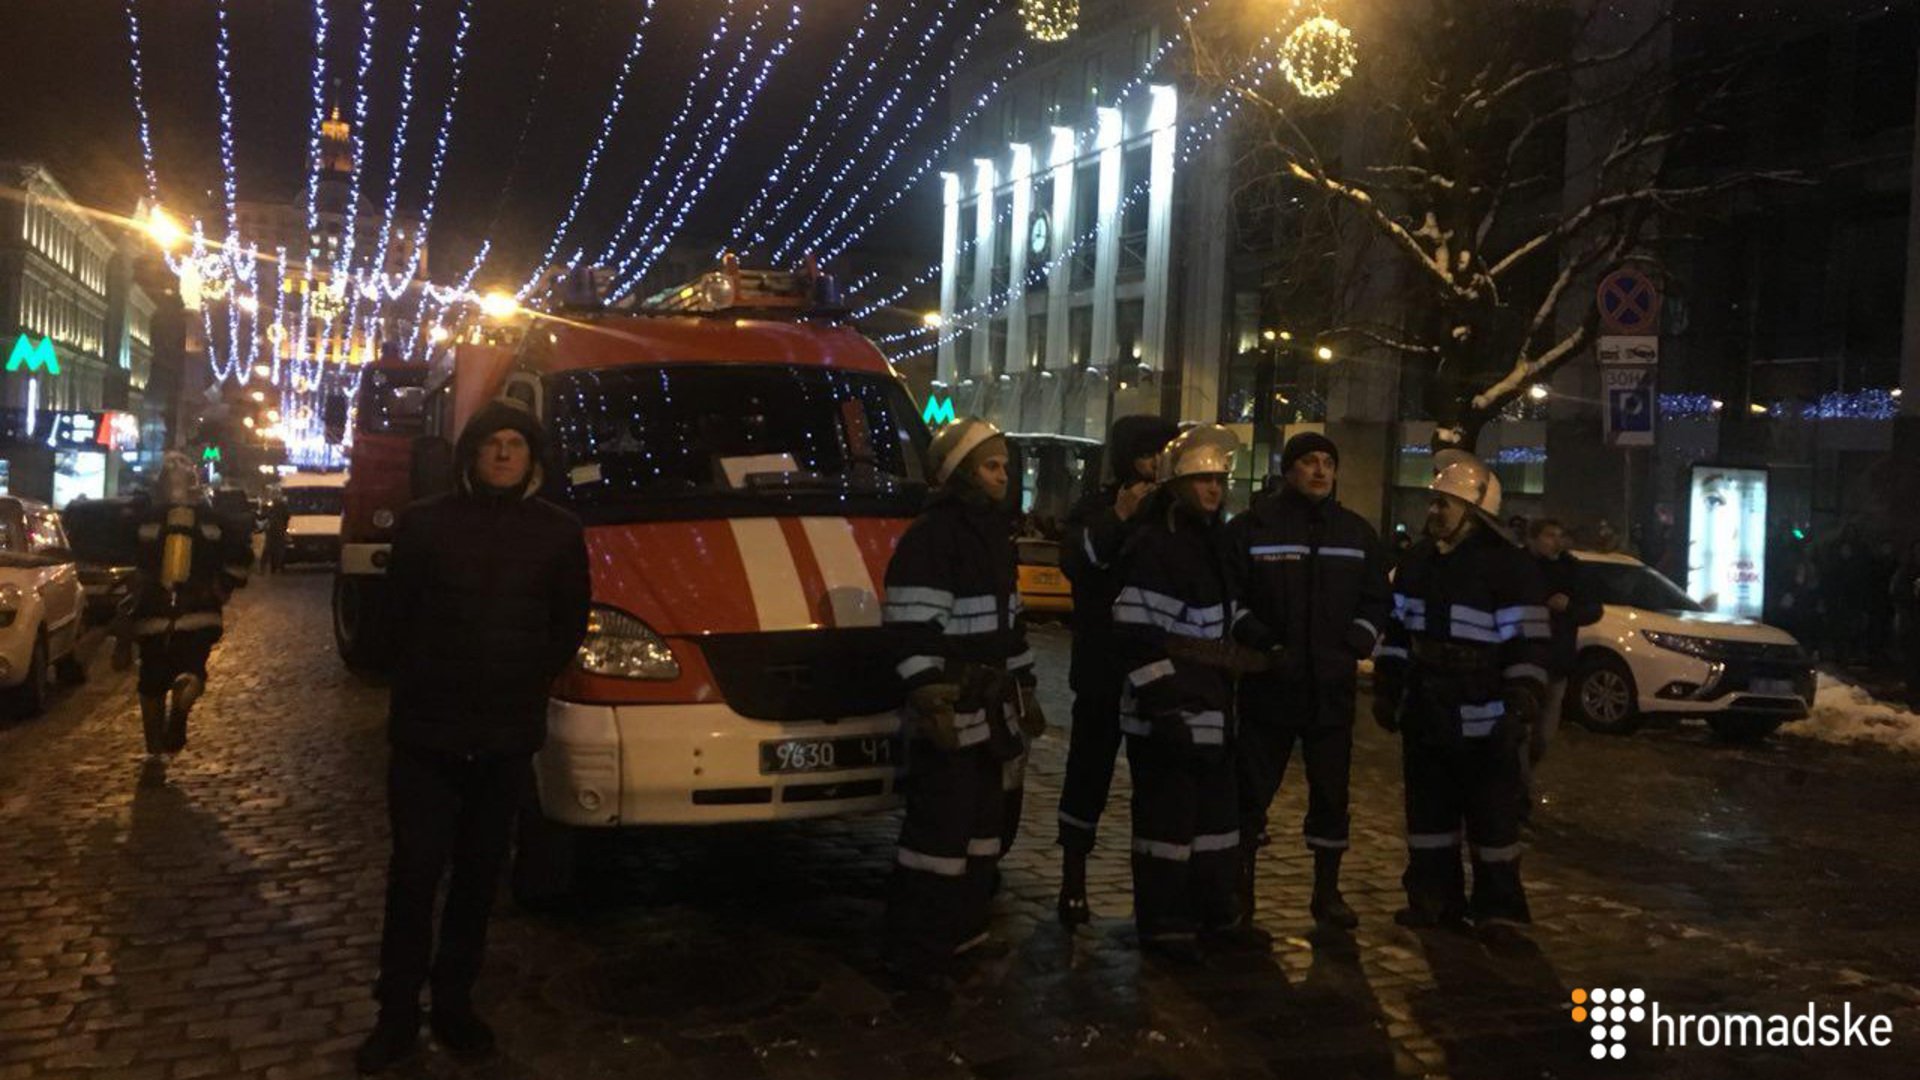 20 января в 19:42 на ул. Богдана Хмельницкого, 14/12 в отселенном шестиэтажном жилом доме возник пожар. 